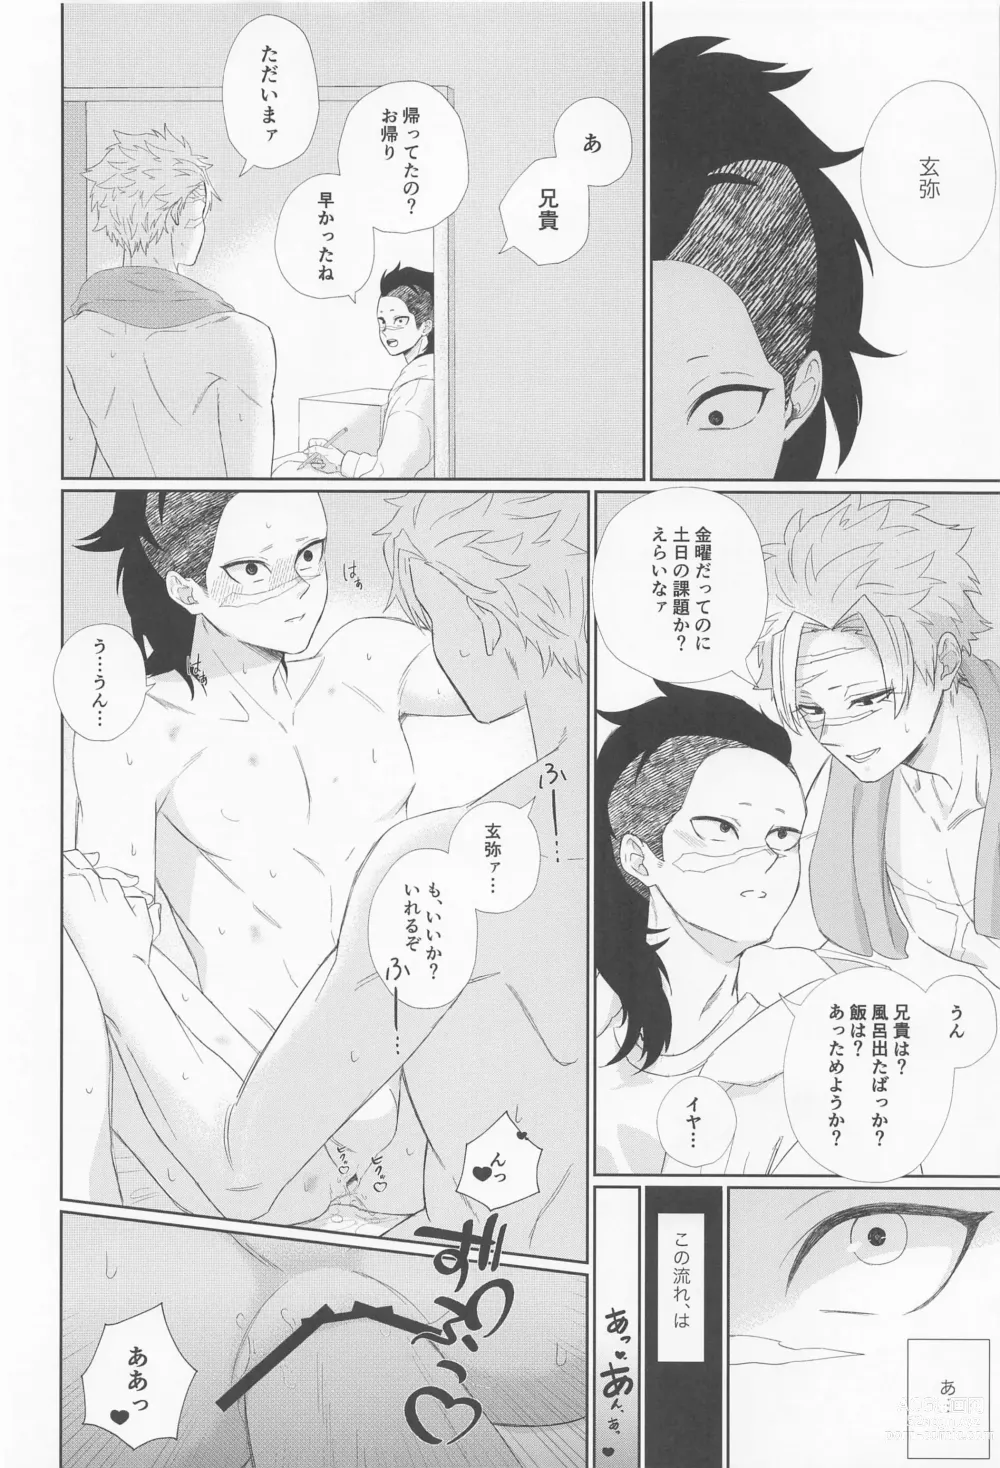 Page 10 of doujinshi Dare ni Demo Himitsu wa Aru - Everyone has secrets.